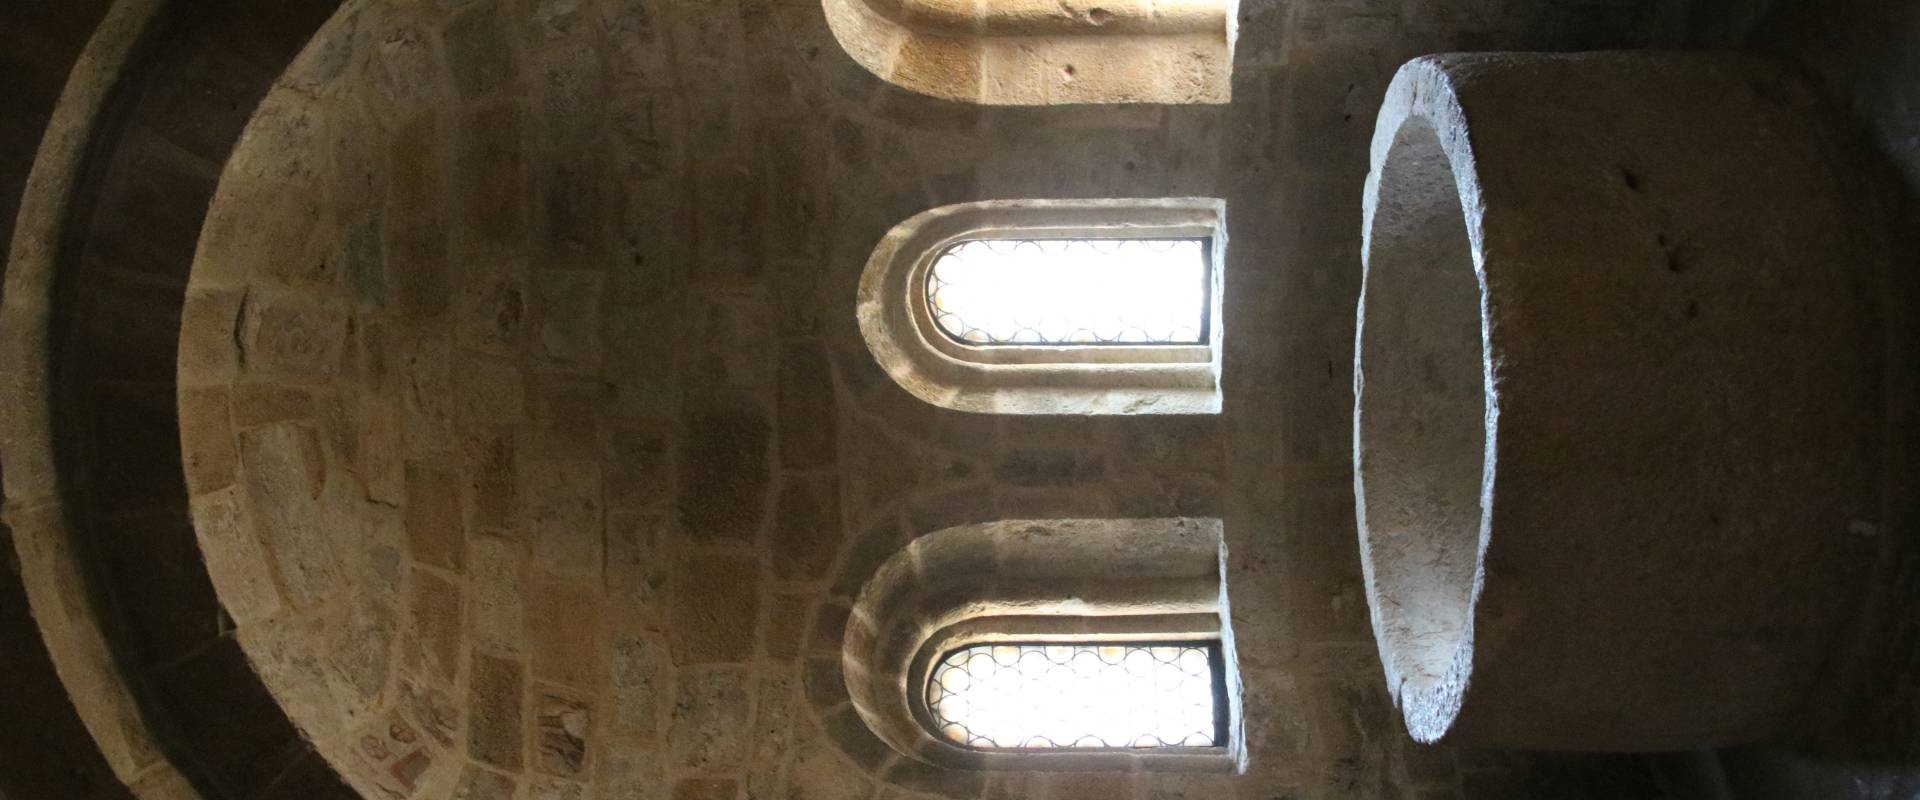 Collegiata di Santa Maria (Castell'Arquato), vasca battesimale monolita dell'viii 01 foto di Mongolo1984